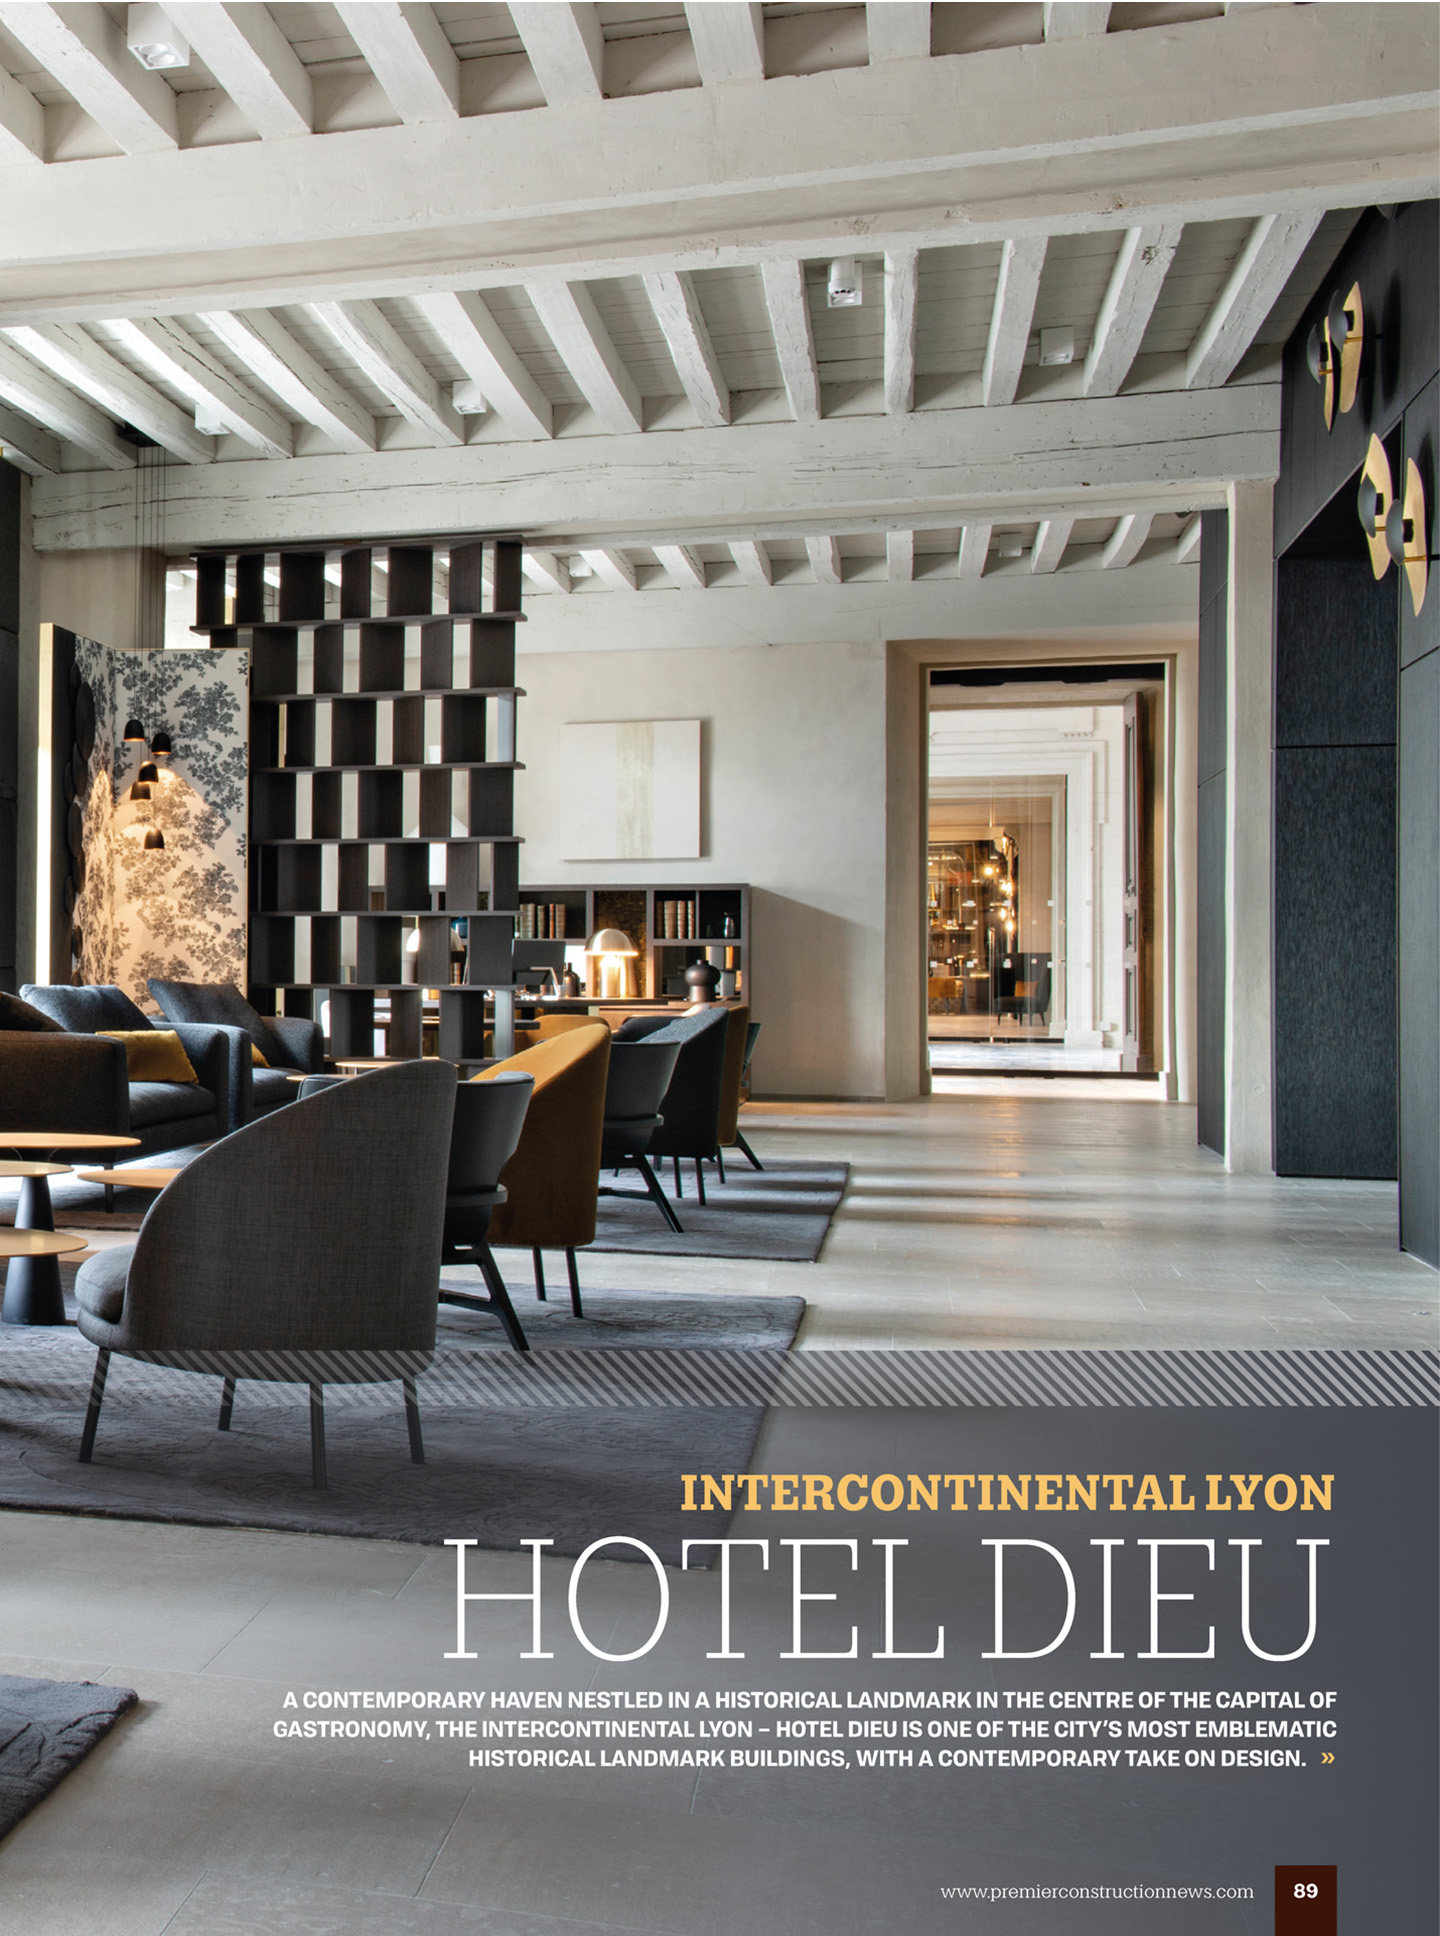 Article sur l'InterContinental Lyon Hotel Dieu réalisé par le studio jean-Philippe Nuel dans le magazine Premier hospitality international; nouvel hotel de luxe, architecture d'intérieur de luxe, patrimoine historique